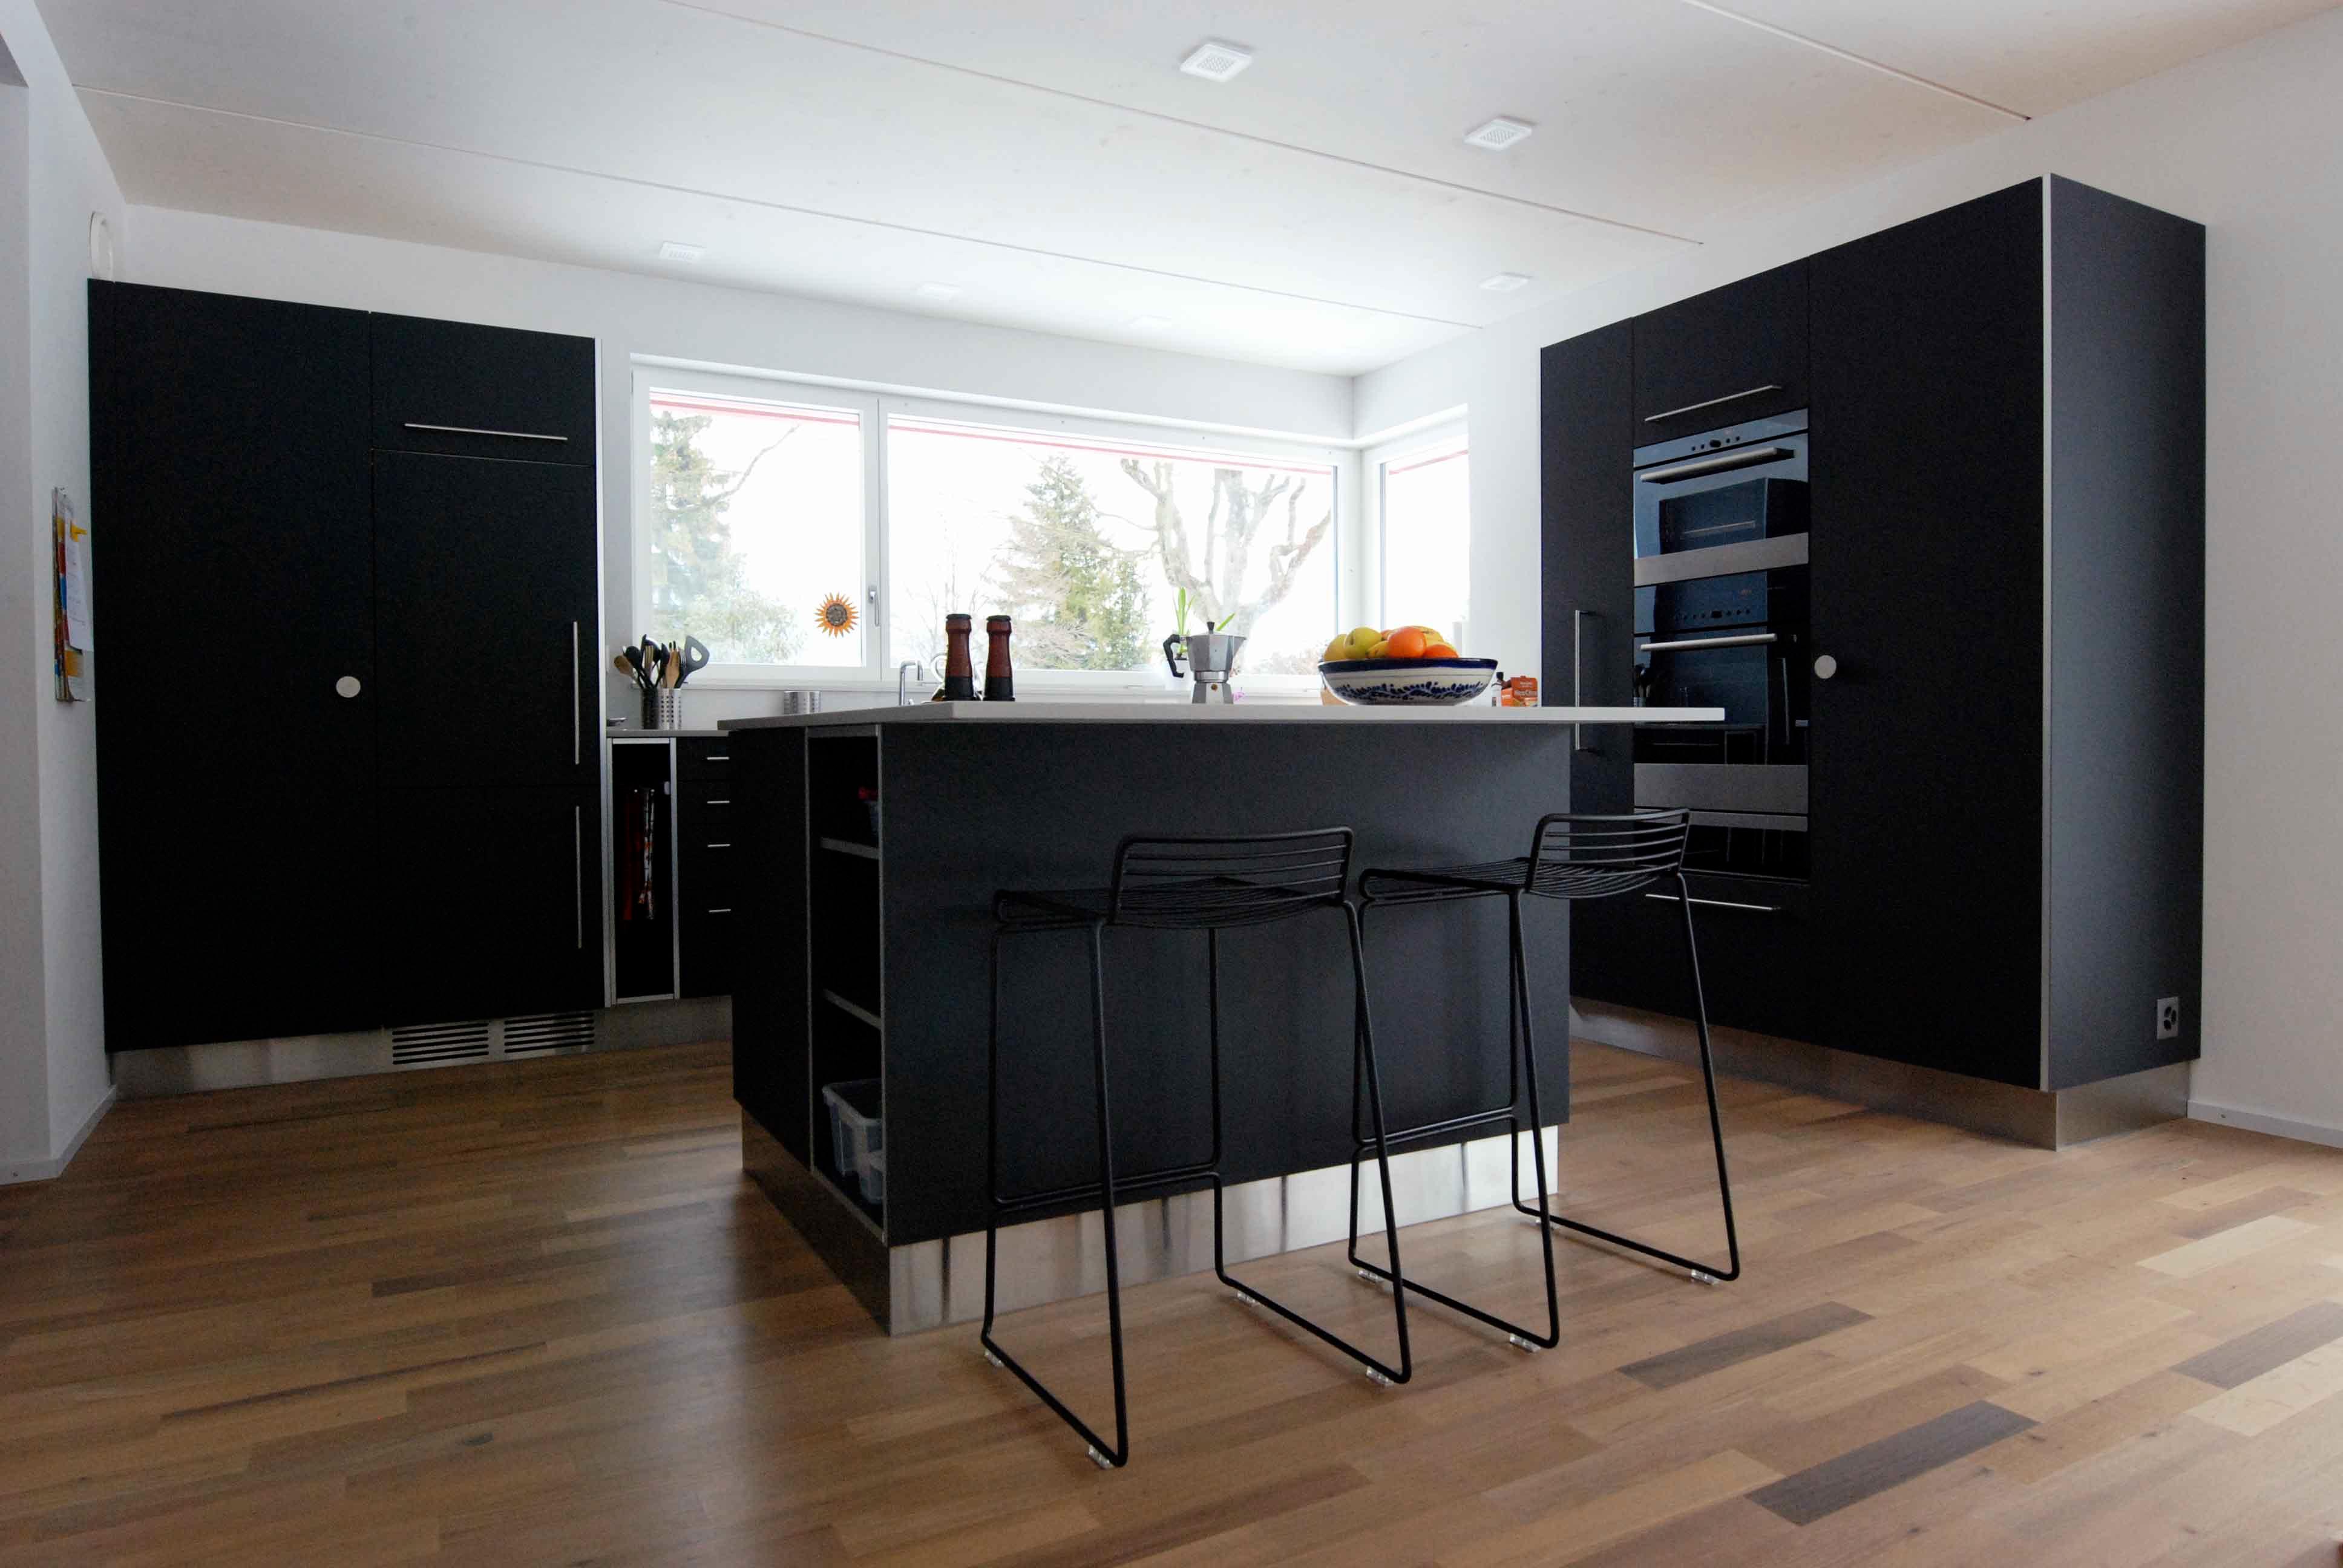  Architektur-Reportage Thun roter Kubus: moderne Küche in schwarz mit Fichtenholzboden 